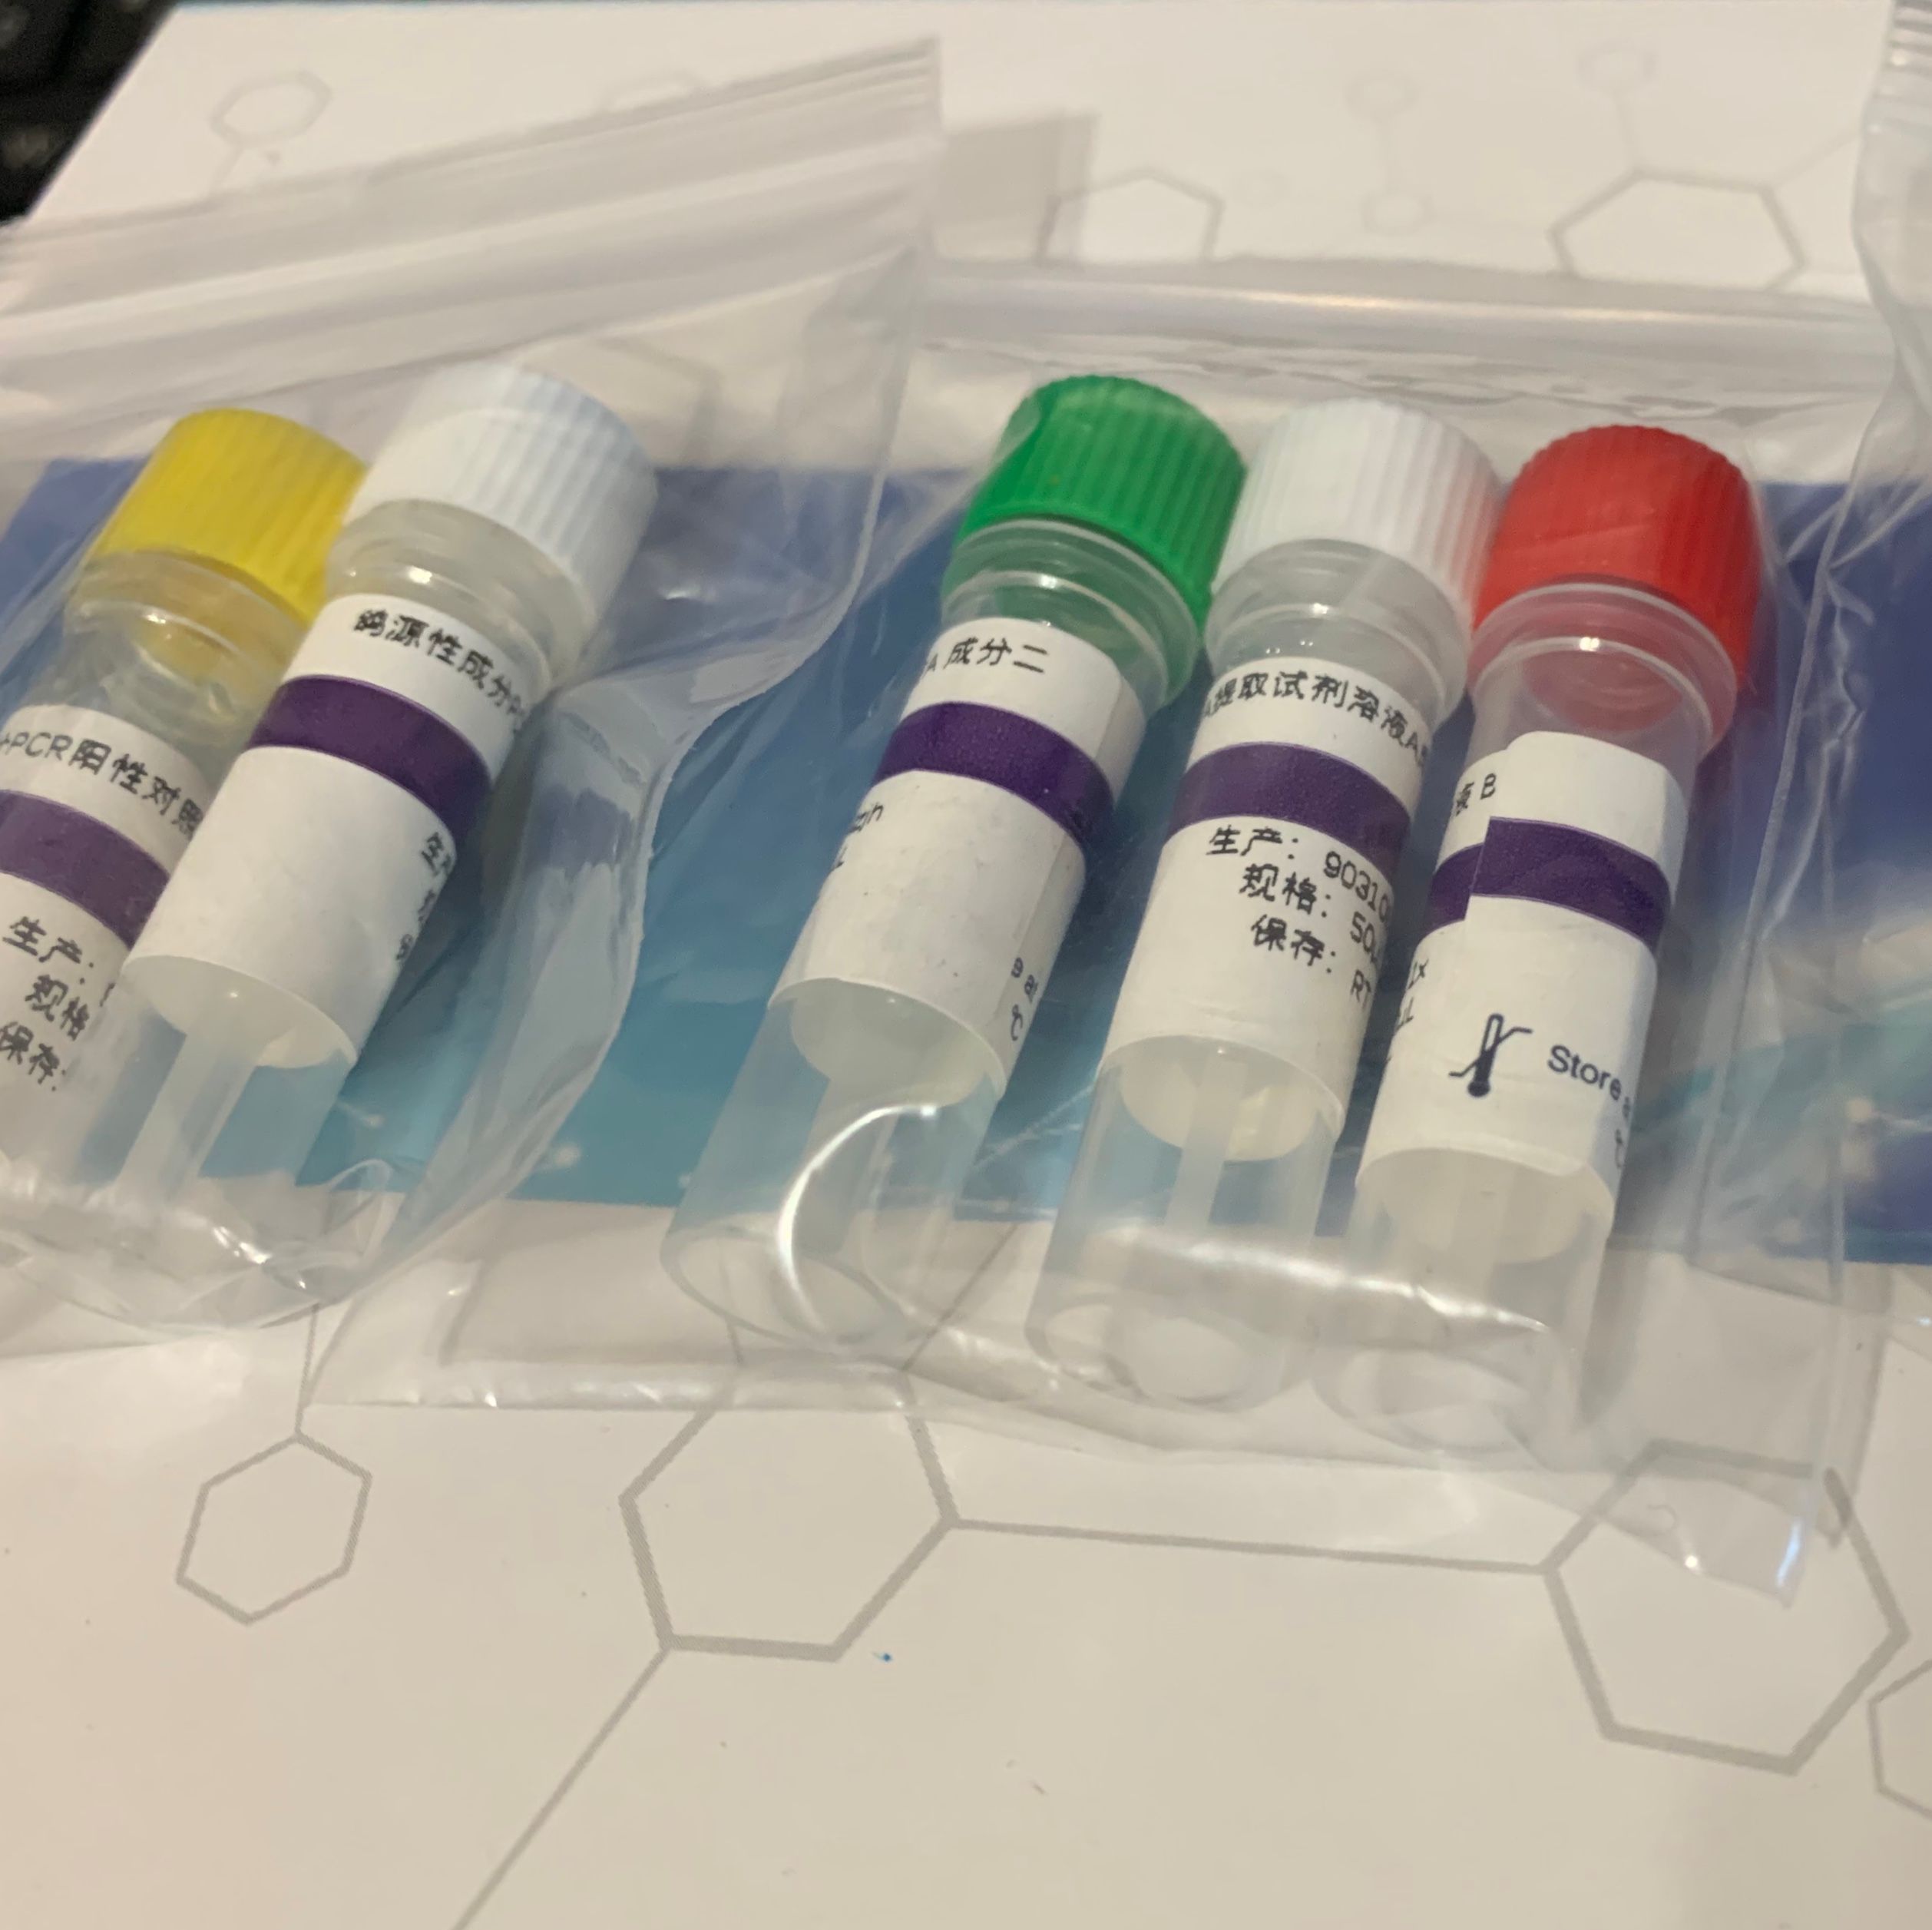 五种致泻性大肠埃希氏菌鉴定试剂盒（PCR法）